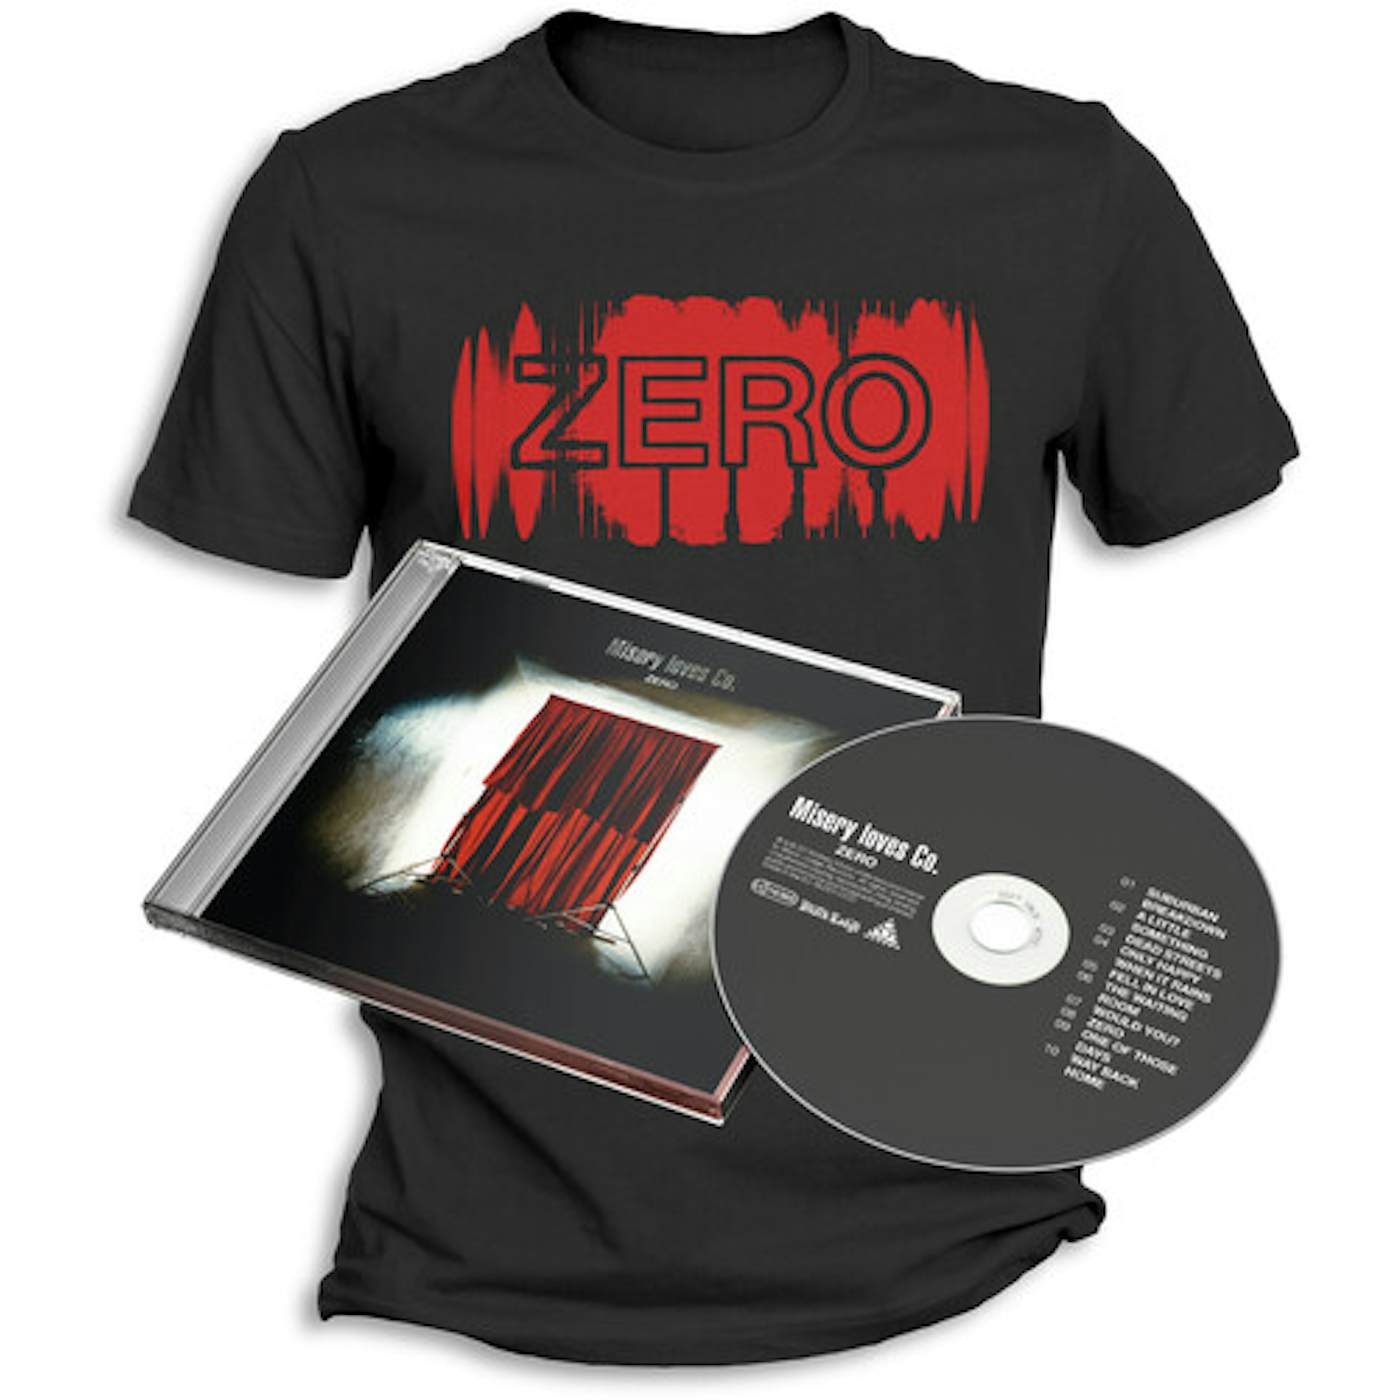 Misery Loves Co. ZERO + T-SHIRT (M) CD